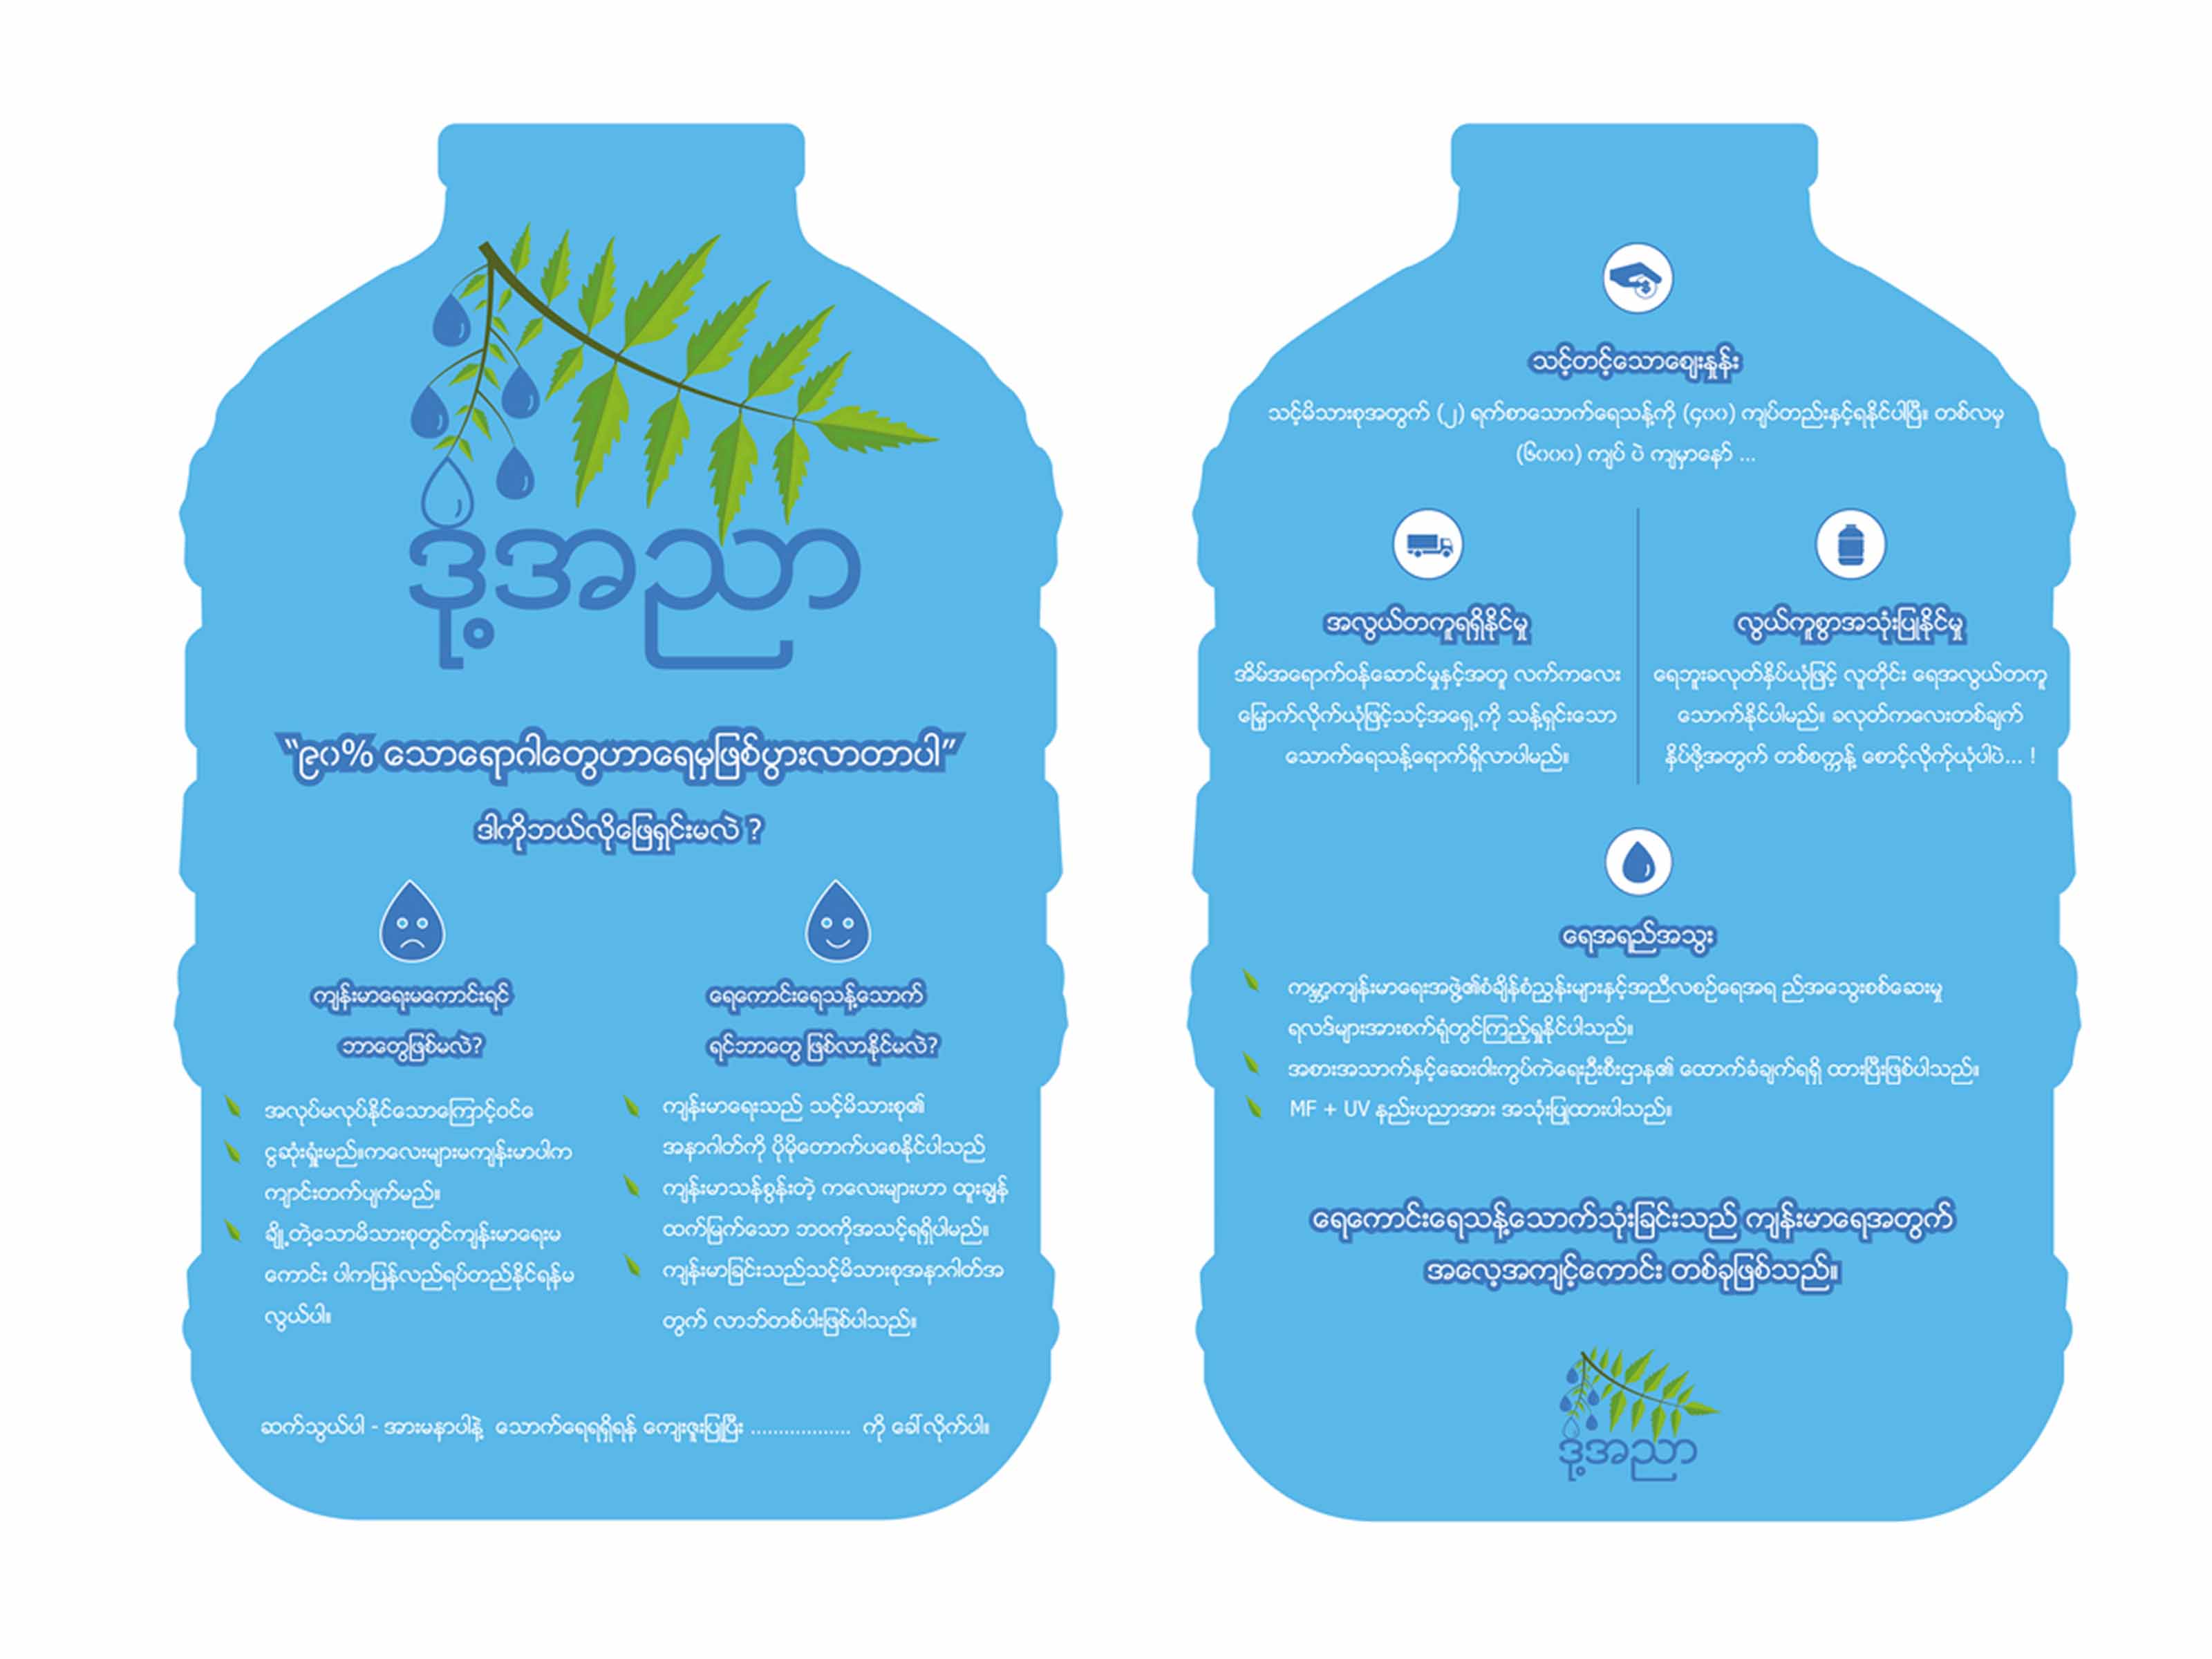 création graphique des flyer, projet magway, Myanmar